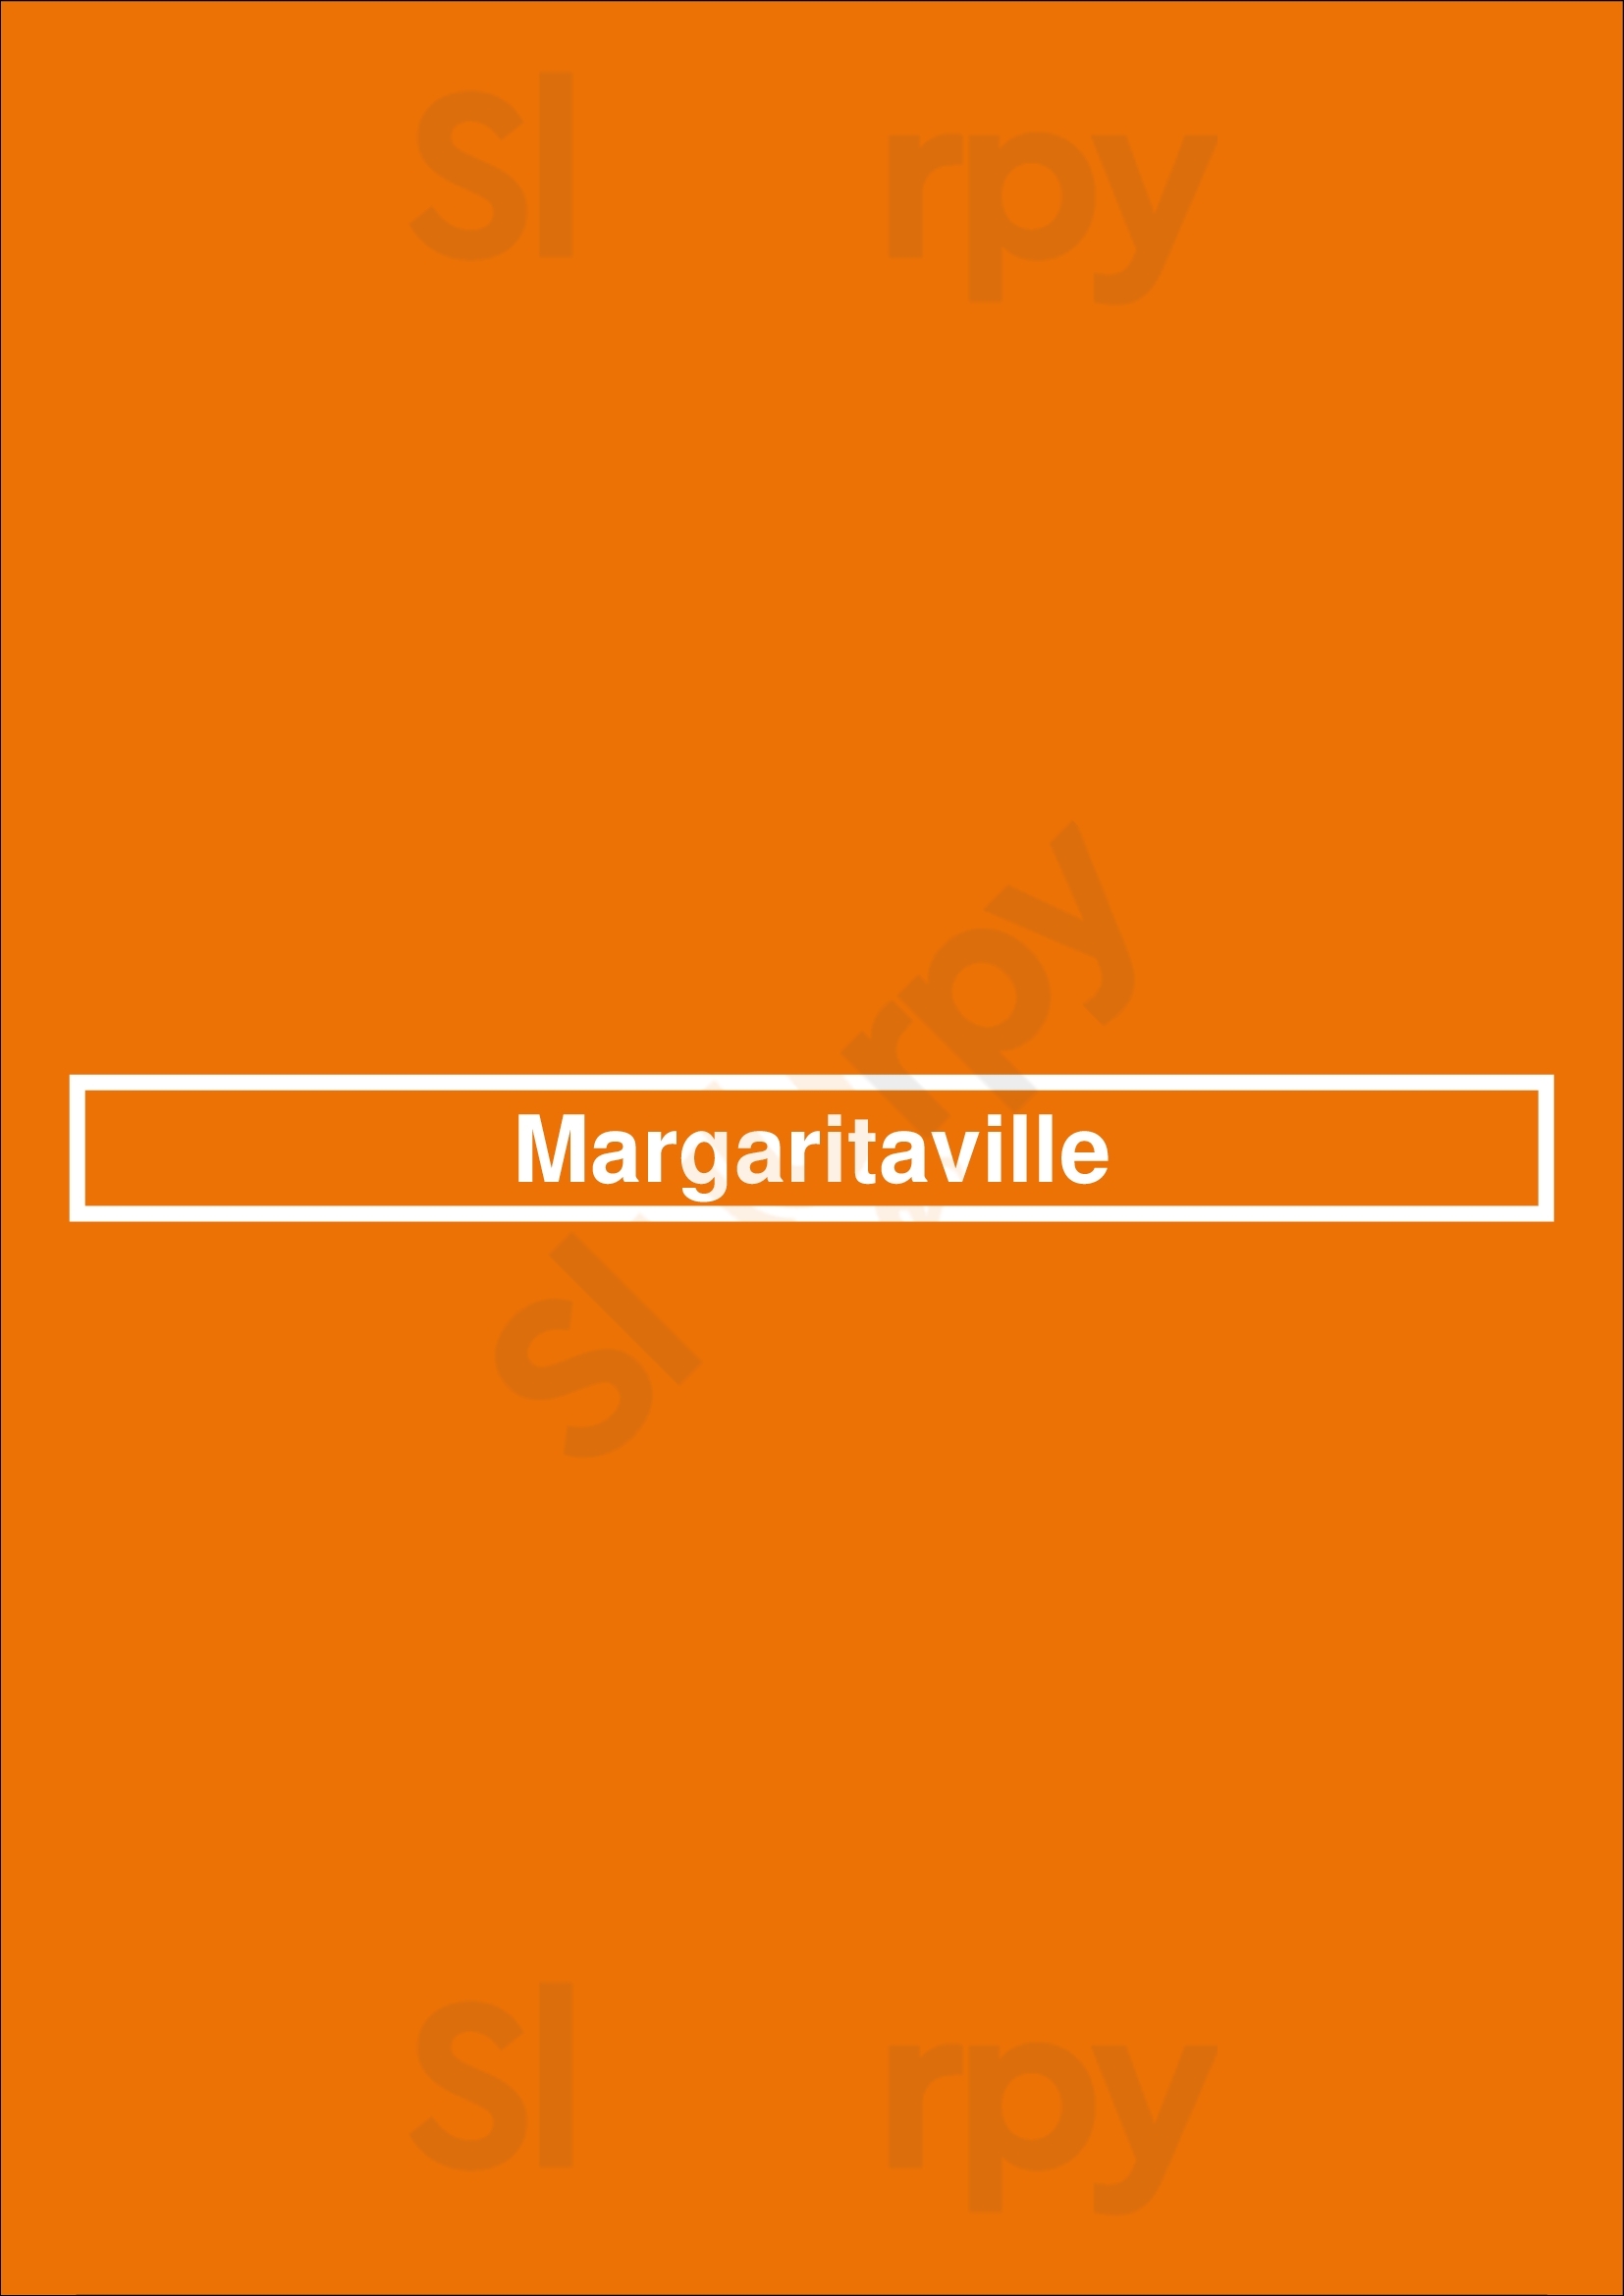 Margaritaville Chicago Menu - 1